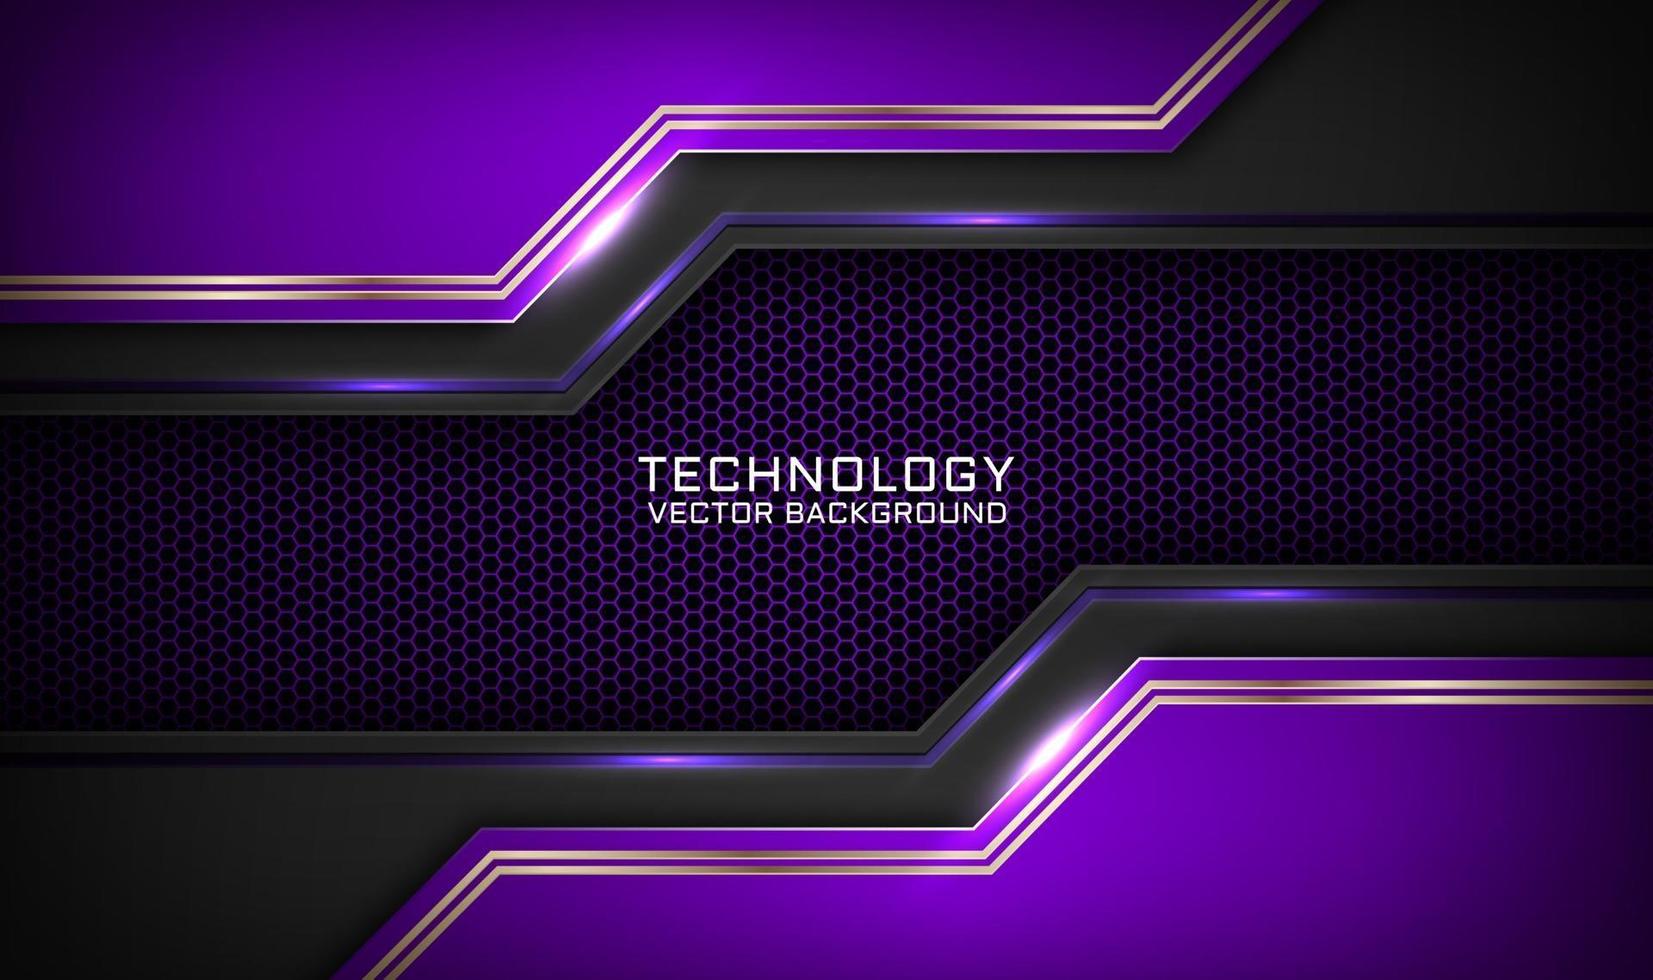 abstrakter 3D-violetter Techno-Hintergrund überlappt Schichten auf dunklem Raum mit weißer Lichteffektdekoration. moderne Grafikdesign-Vorlagenelemente für Flyer, Karten, Cover, Broschüren oder Landing Pages vektor